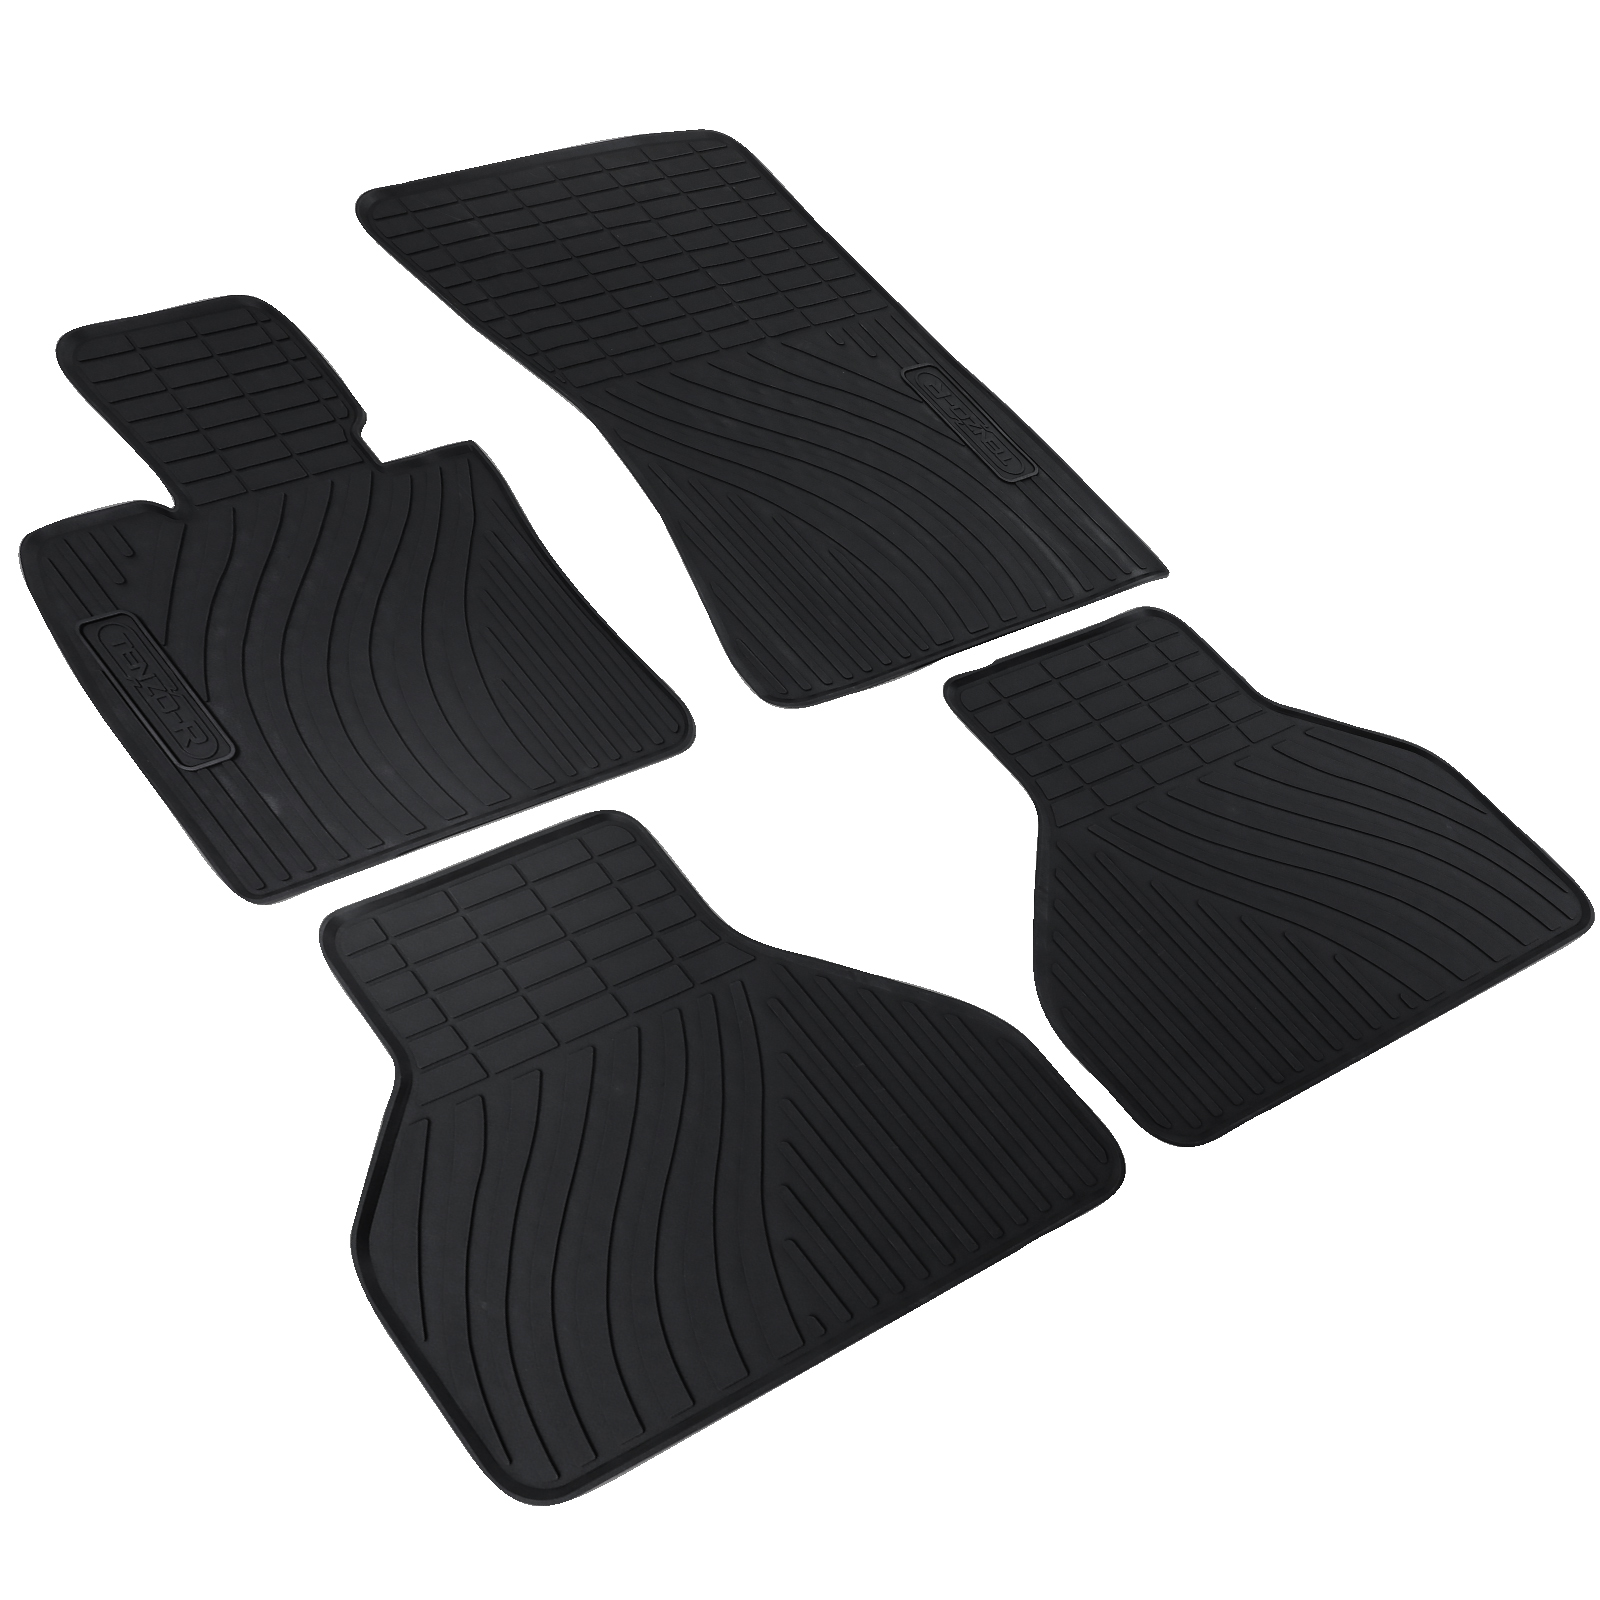 Auto Gummi Fußmatten Schwarz Set Premium kaufen E70 X6 X5 BMW passend E71 für